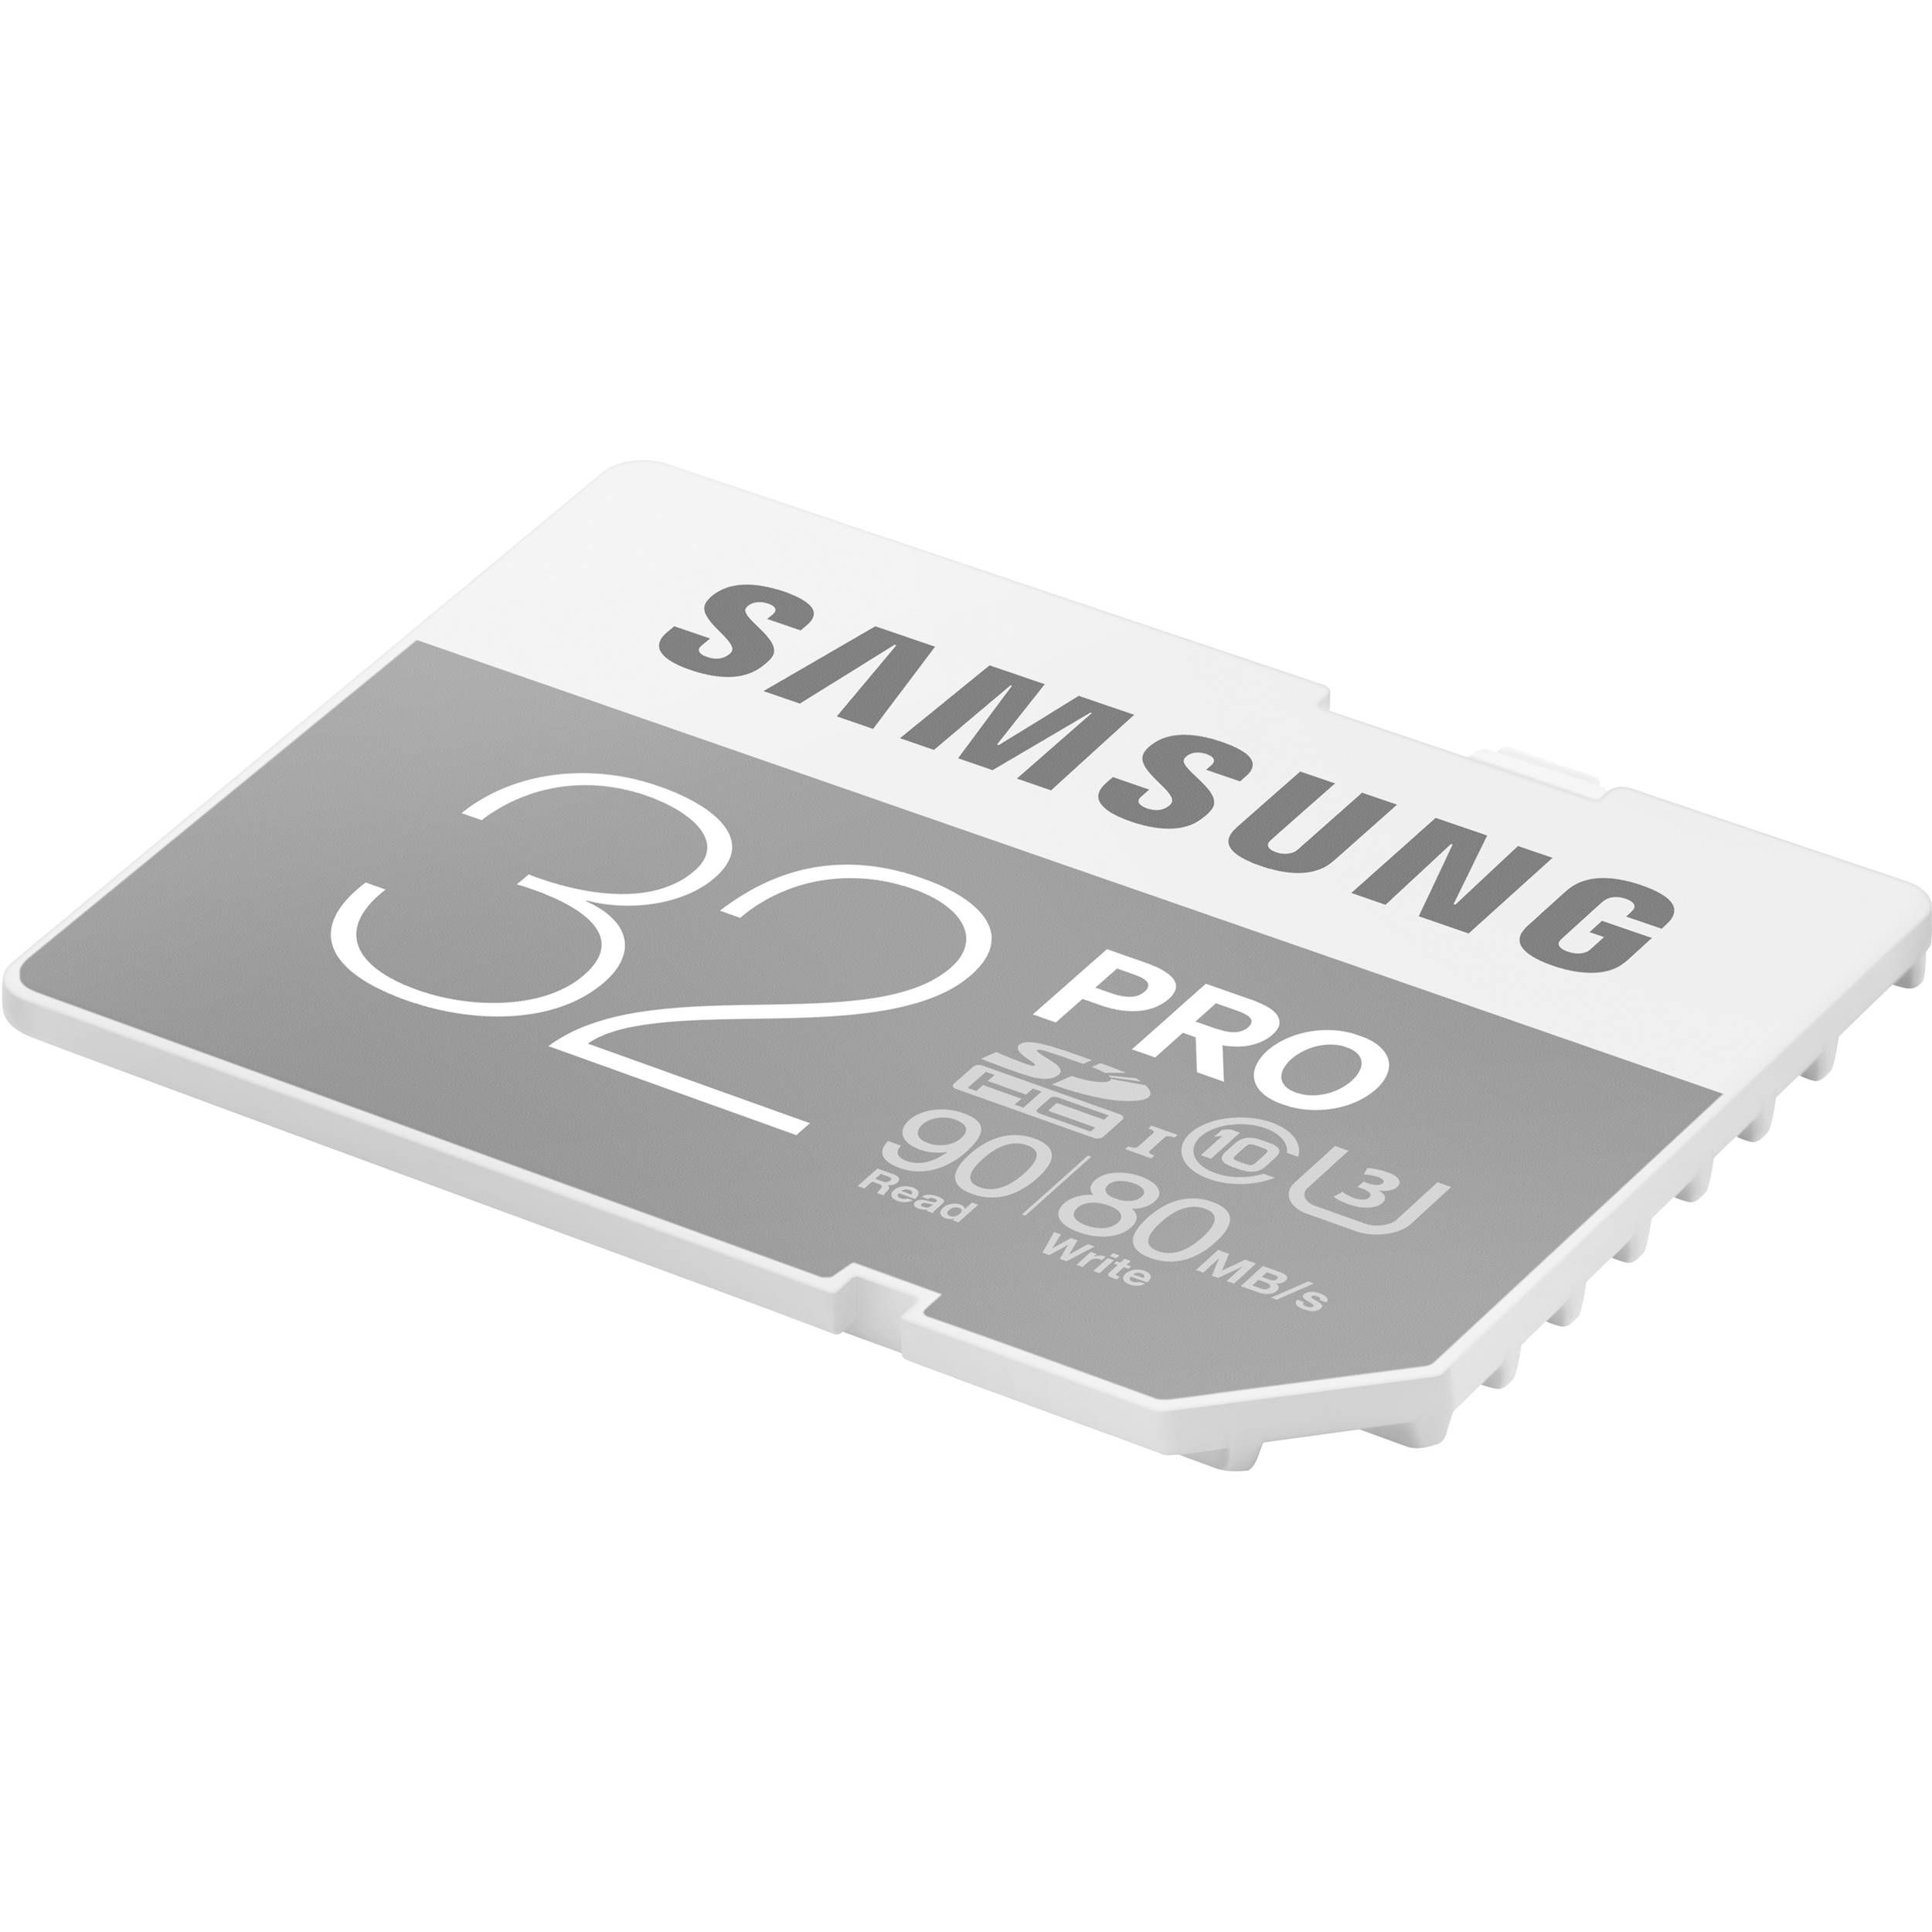 Samsung Evo 64gb U3